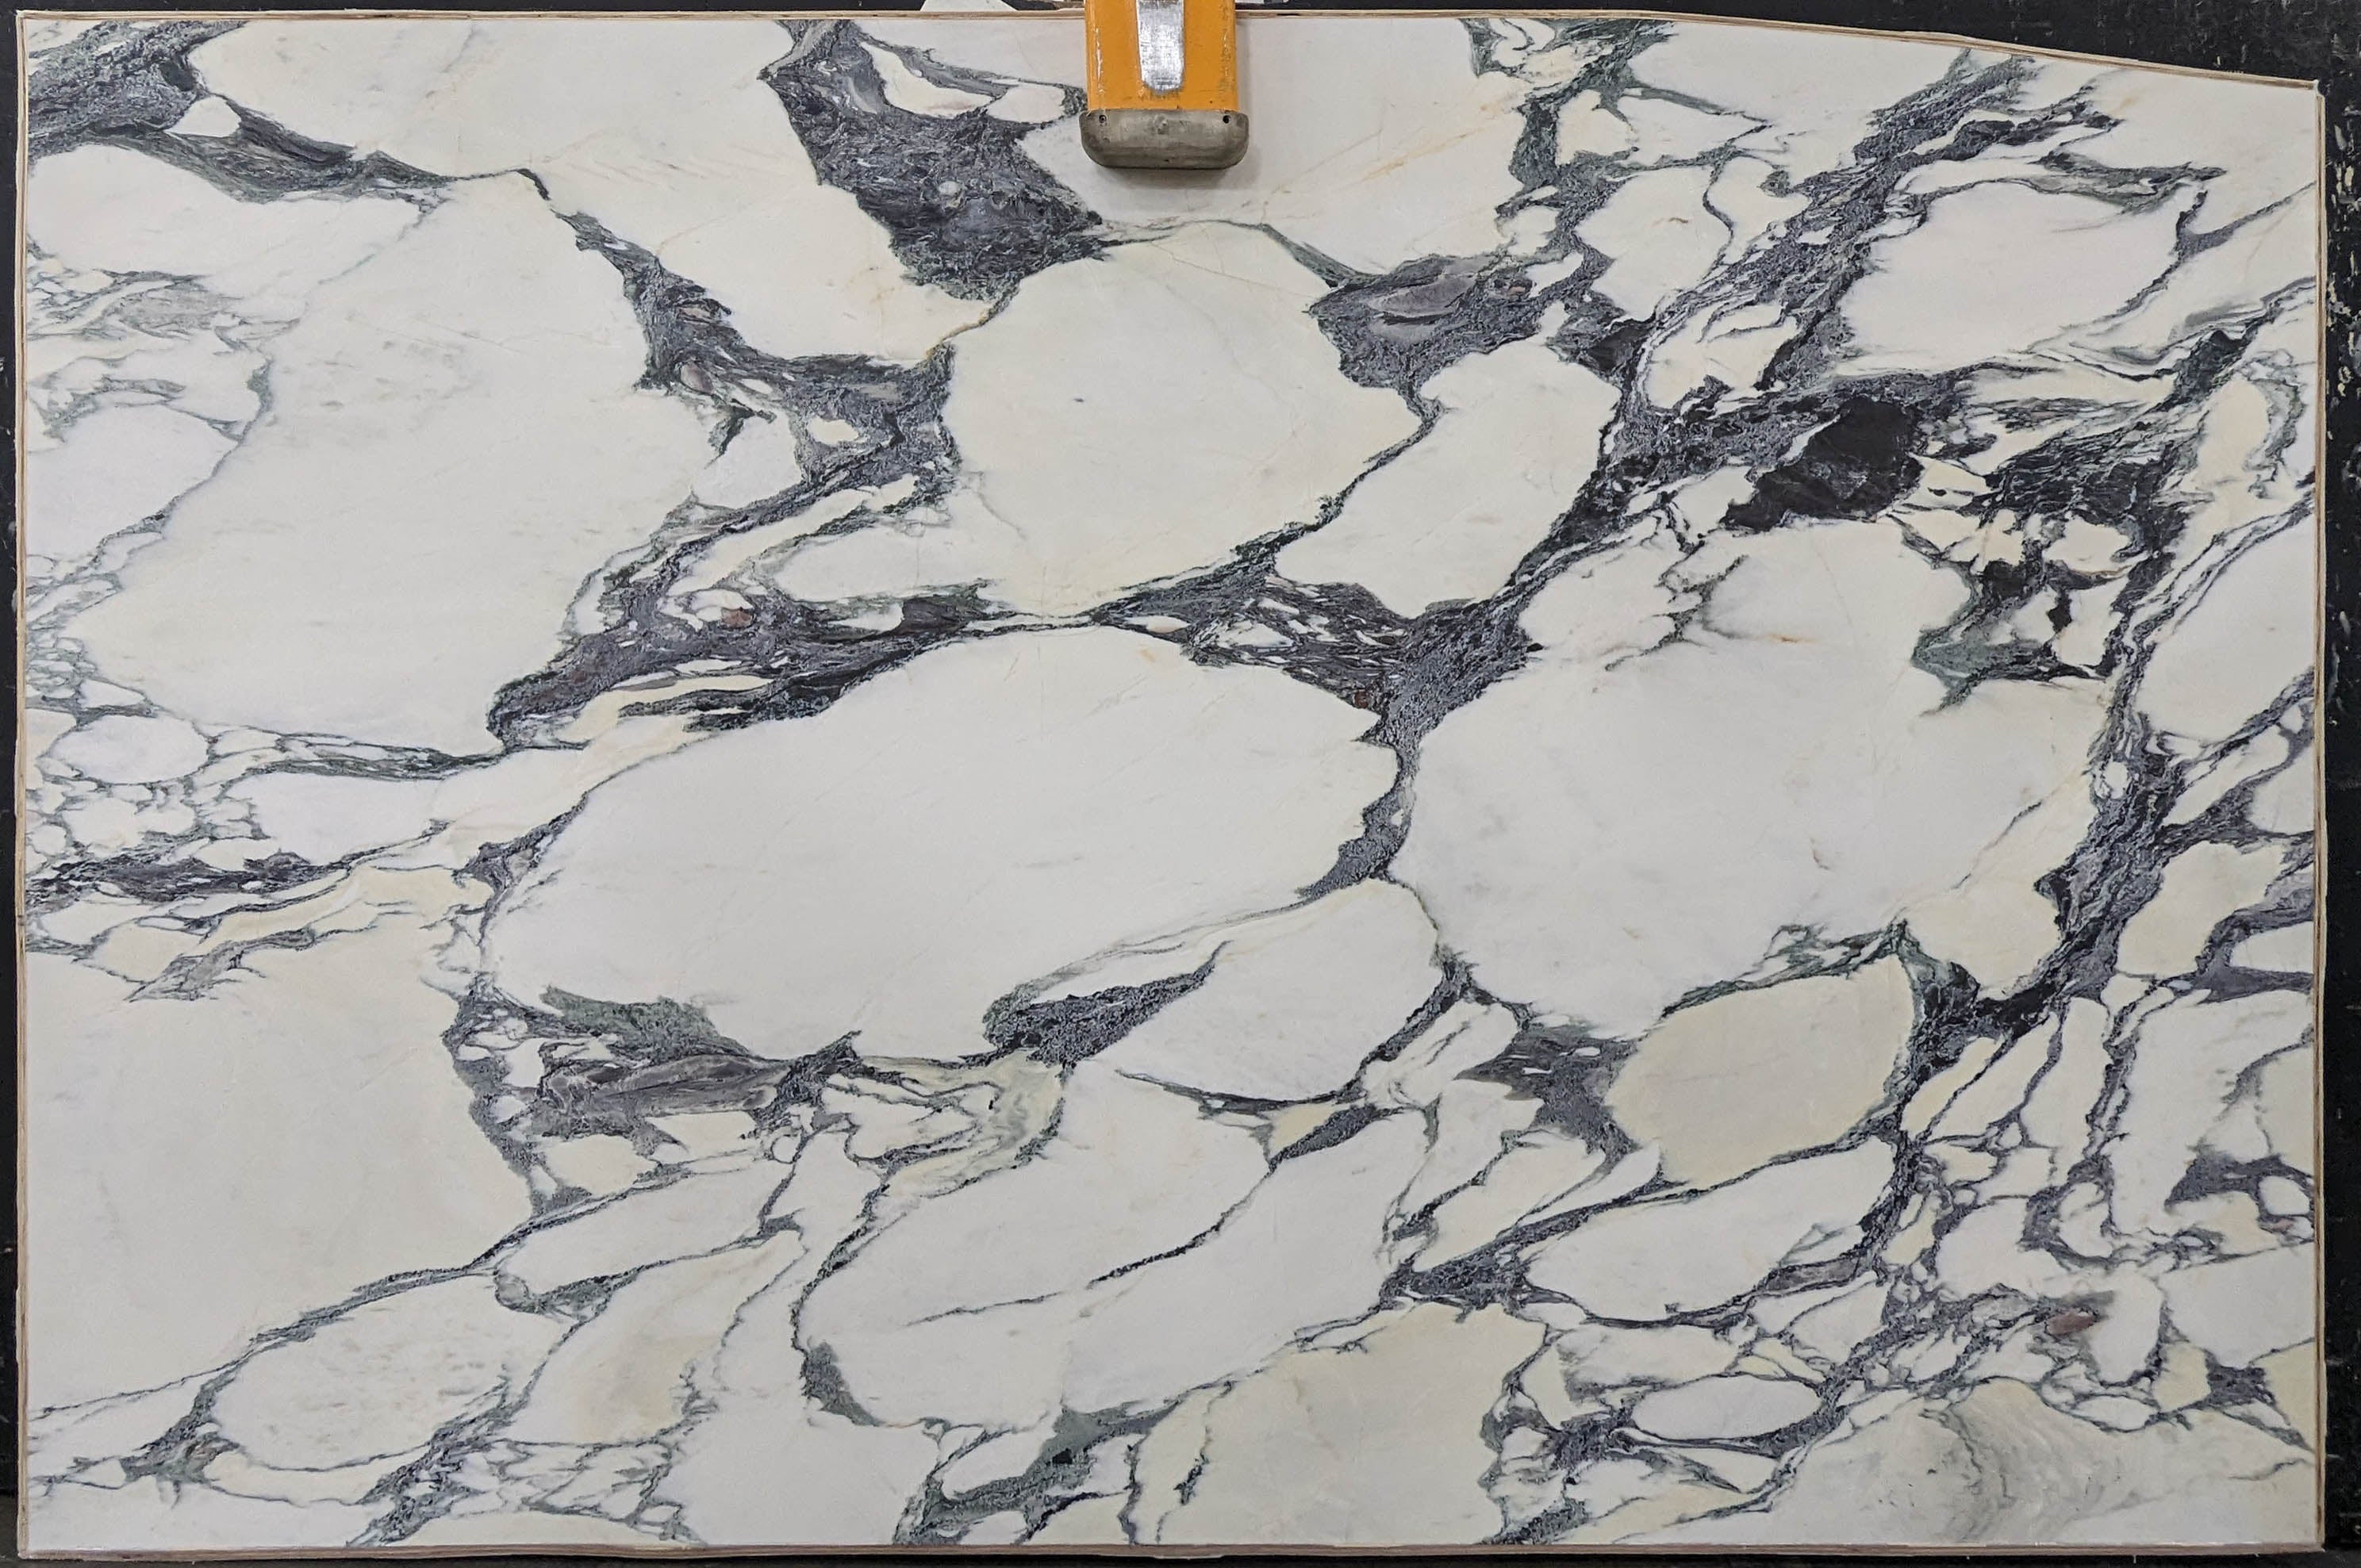  Calacatta Viola Marble Slab 3/4 - 13737A#53 -  74x116 